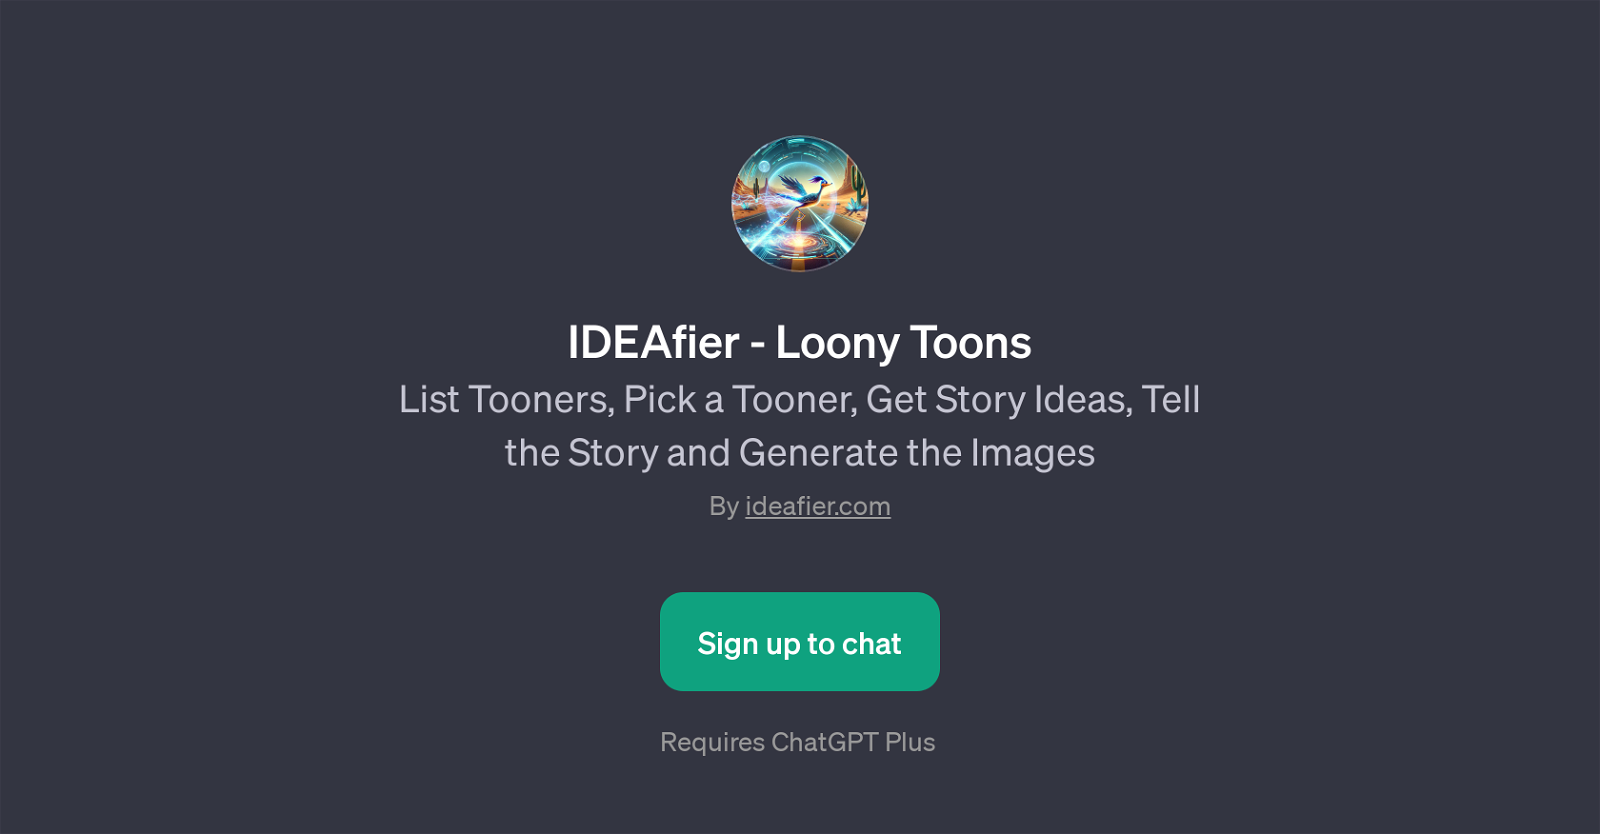 IDEAfier - Loony Toons website